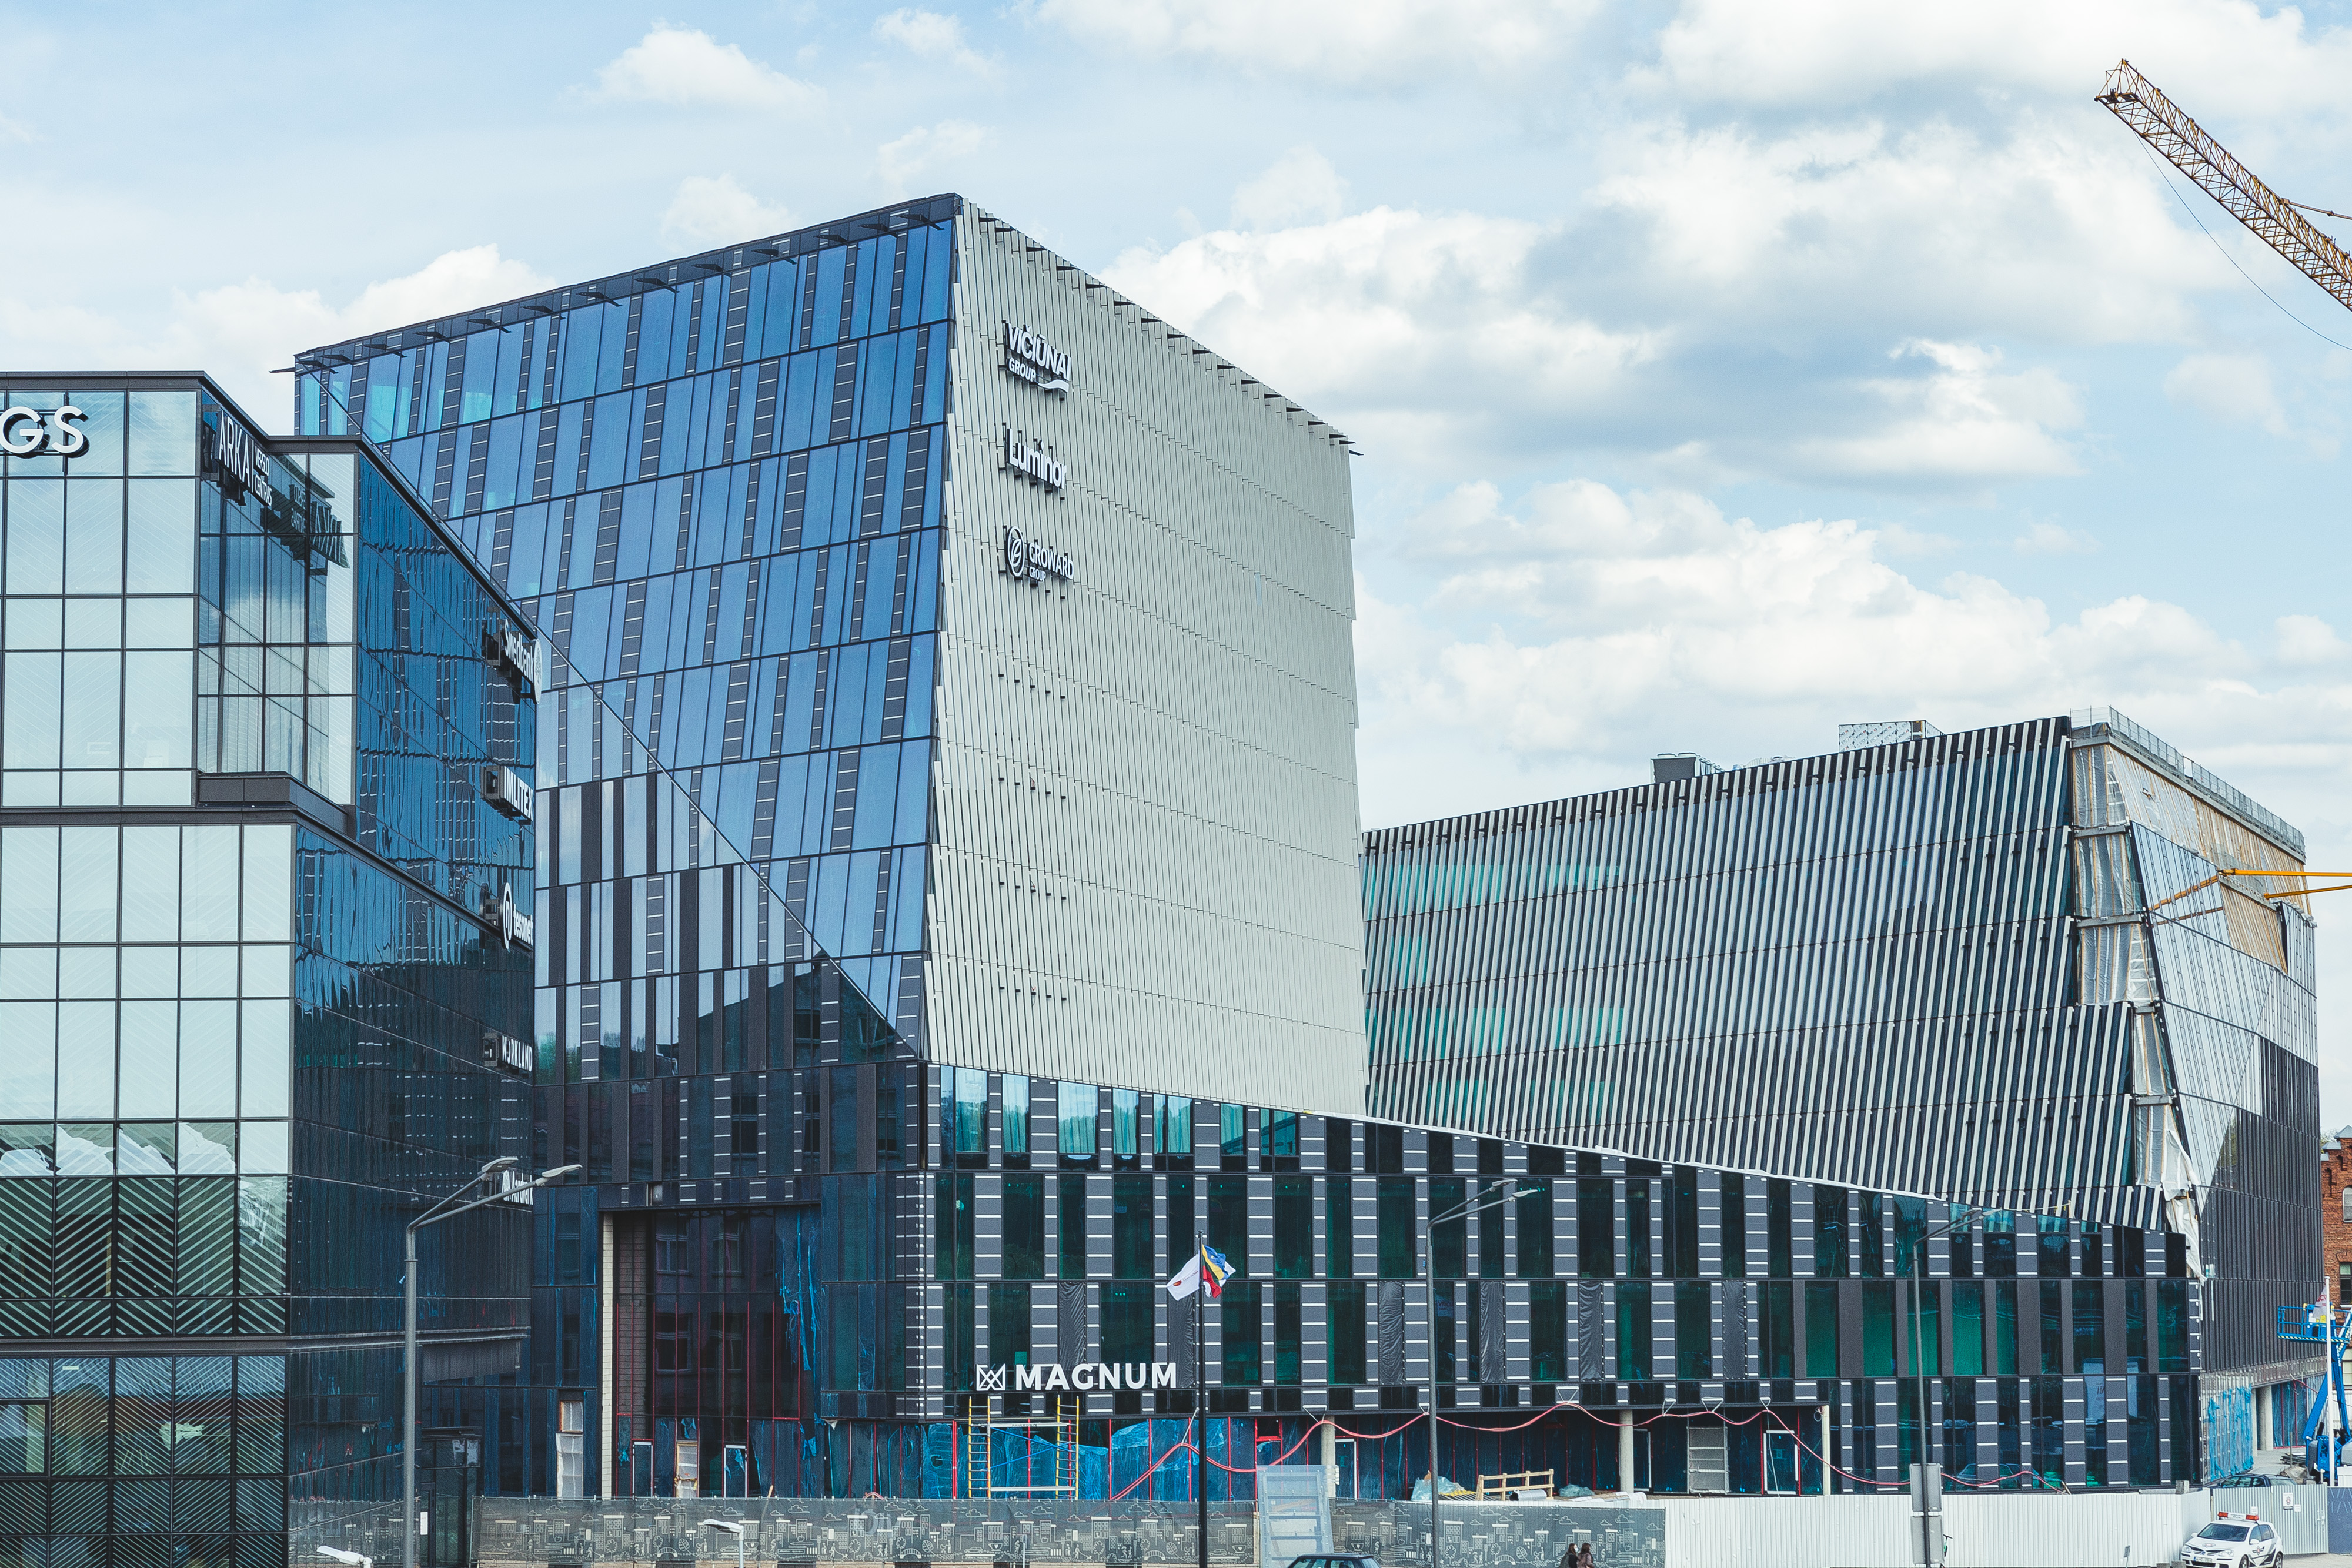 Business centre Magnum in Kaunas